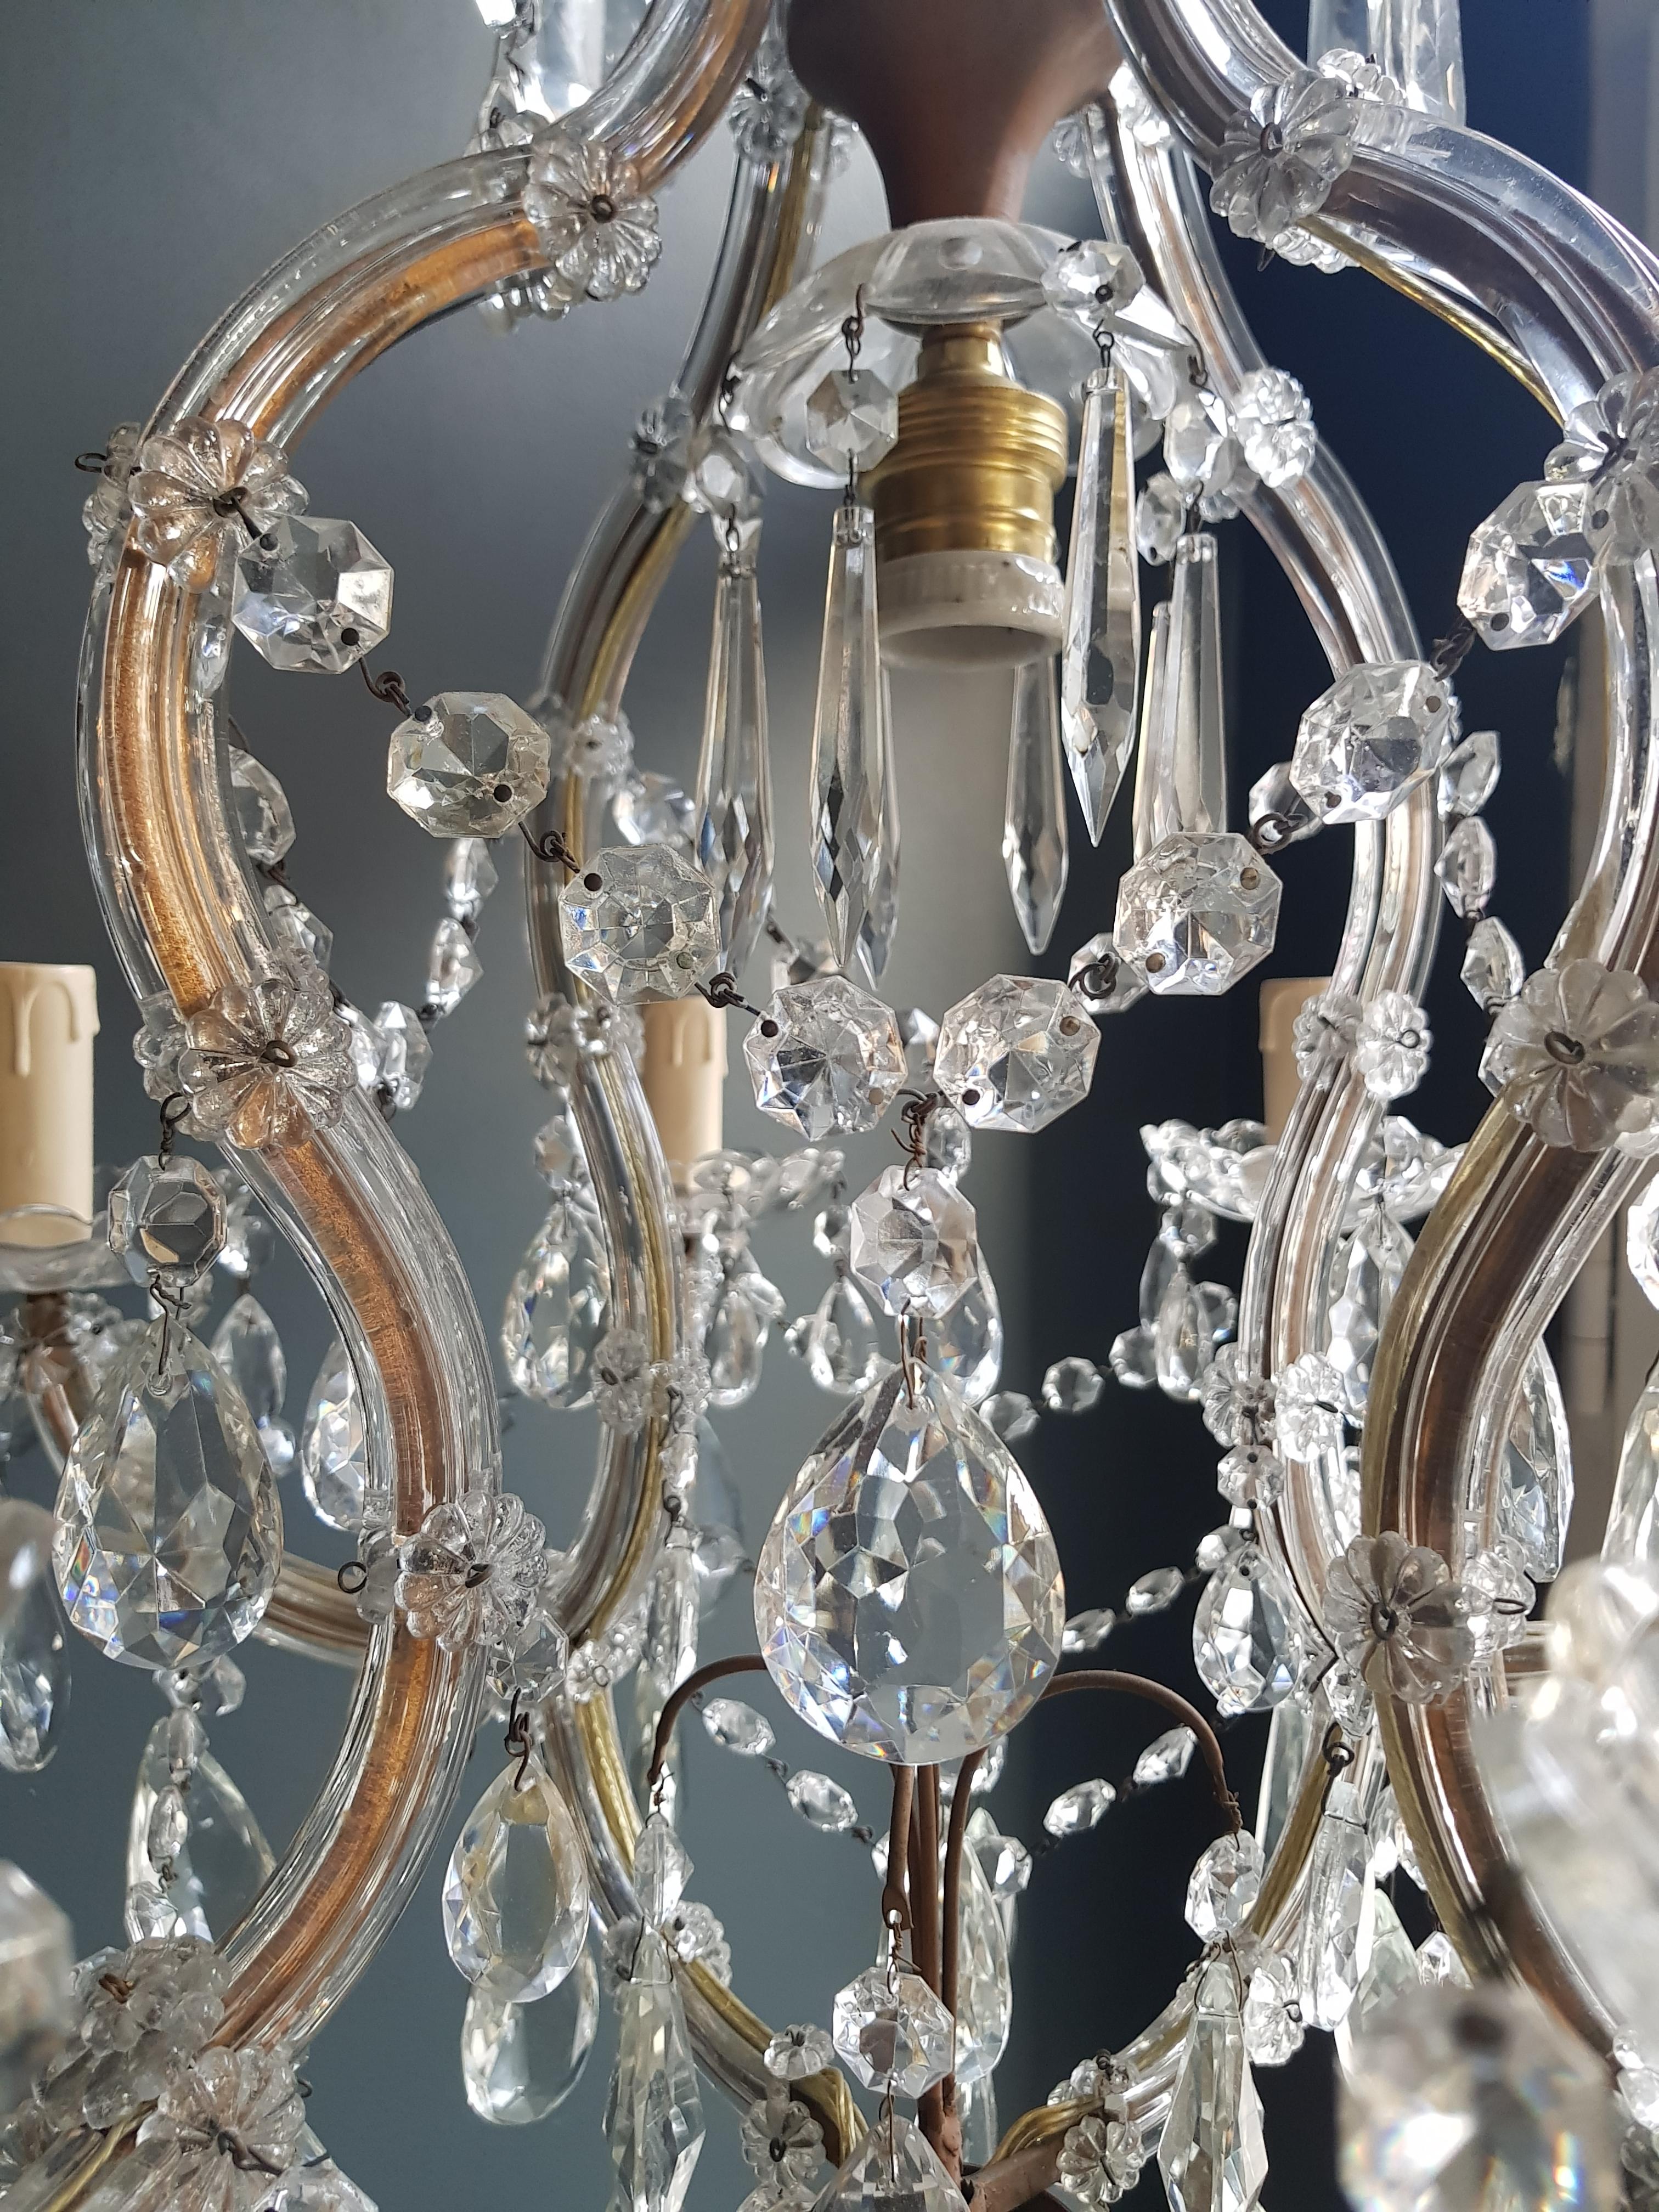 European Maria Theresa Crystal Chandelier Antique Ceiling Lamp Lustre Art Nouveau